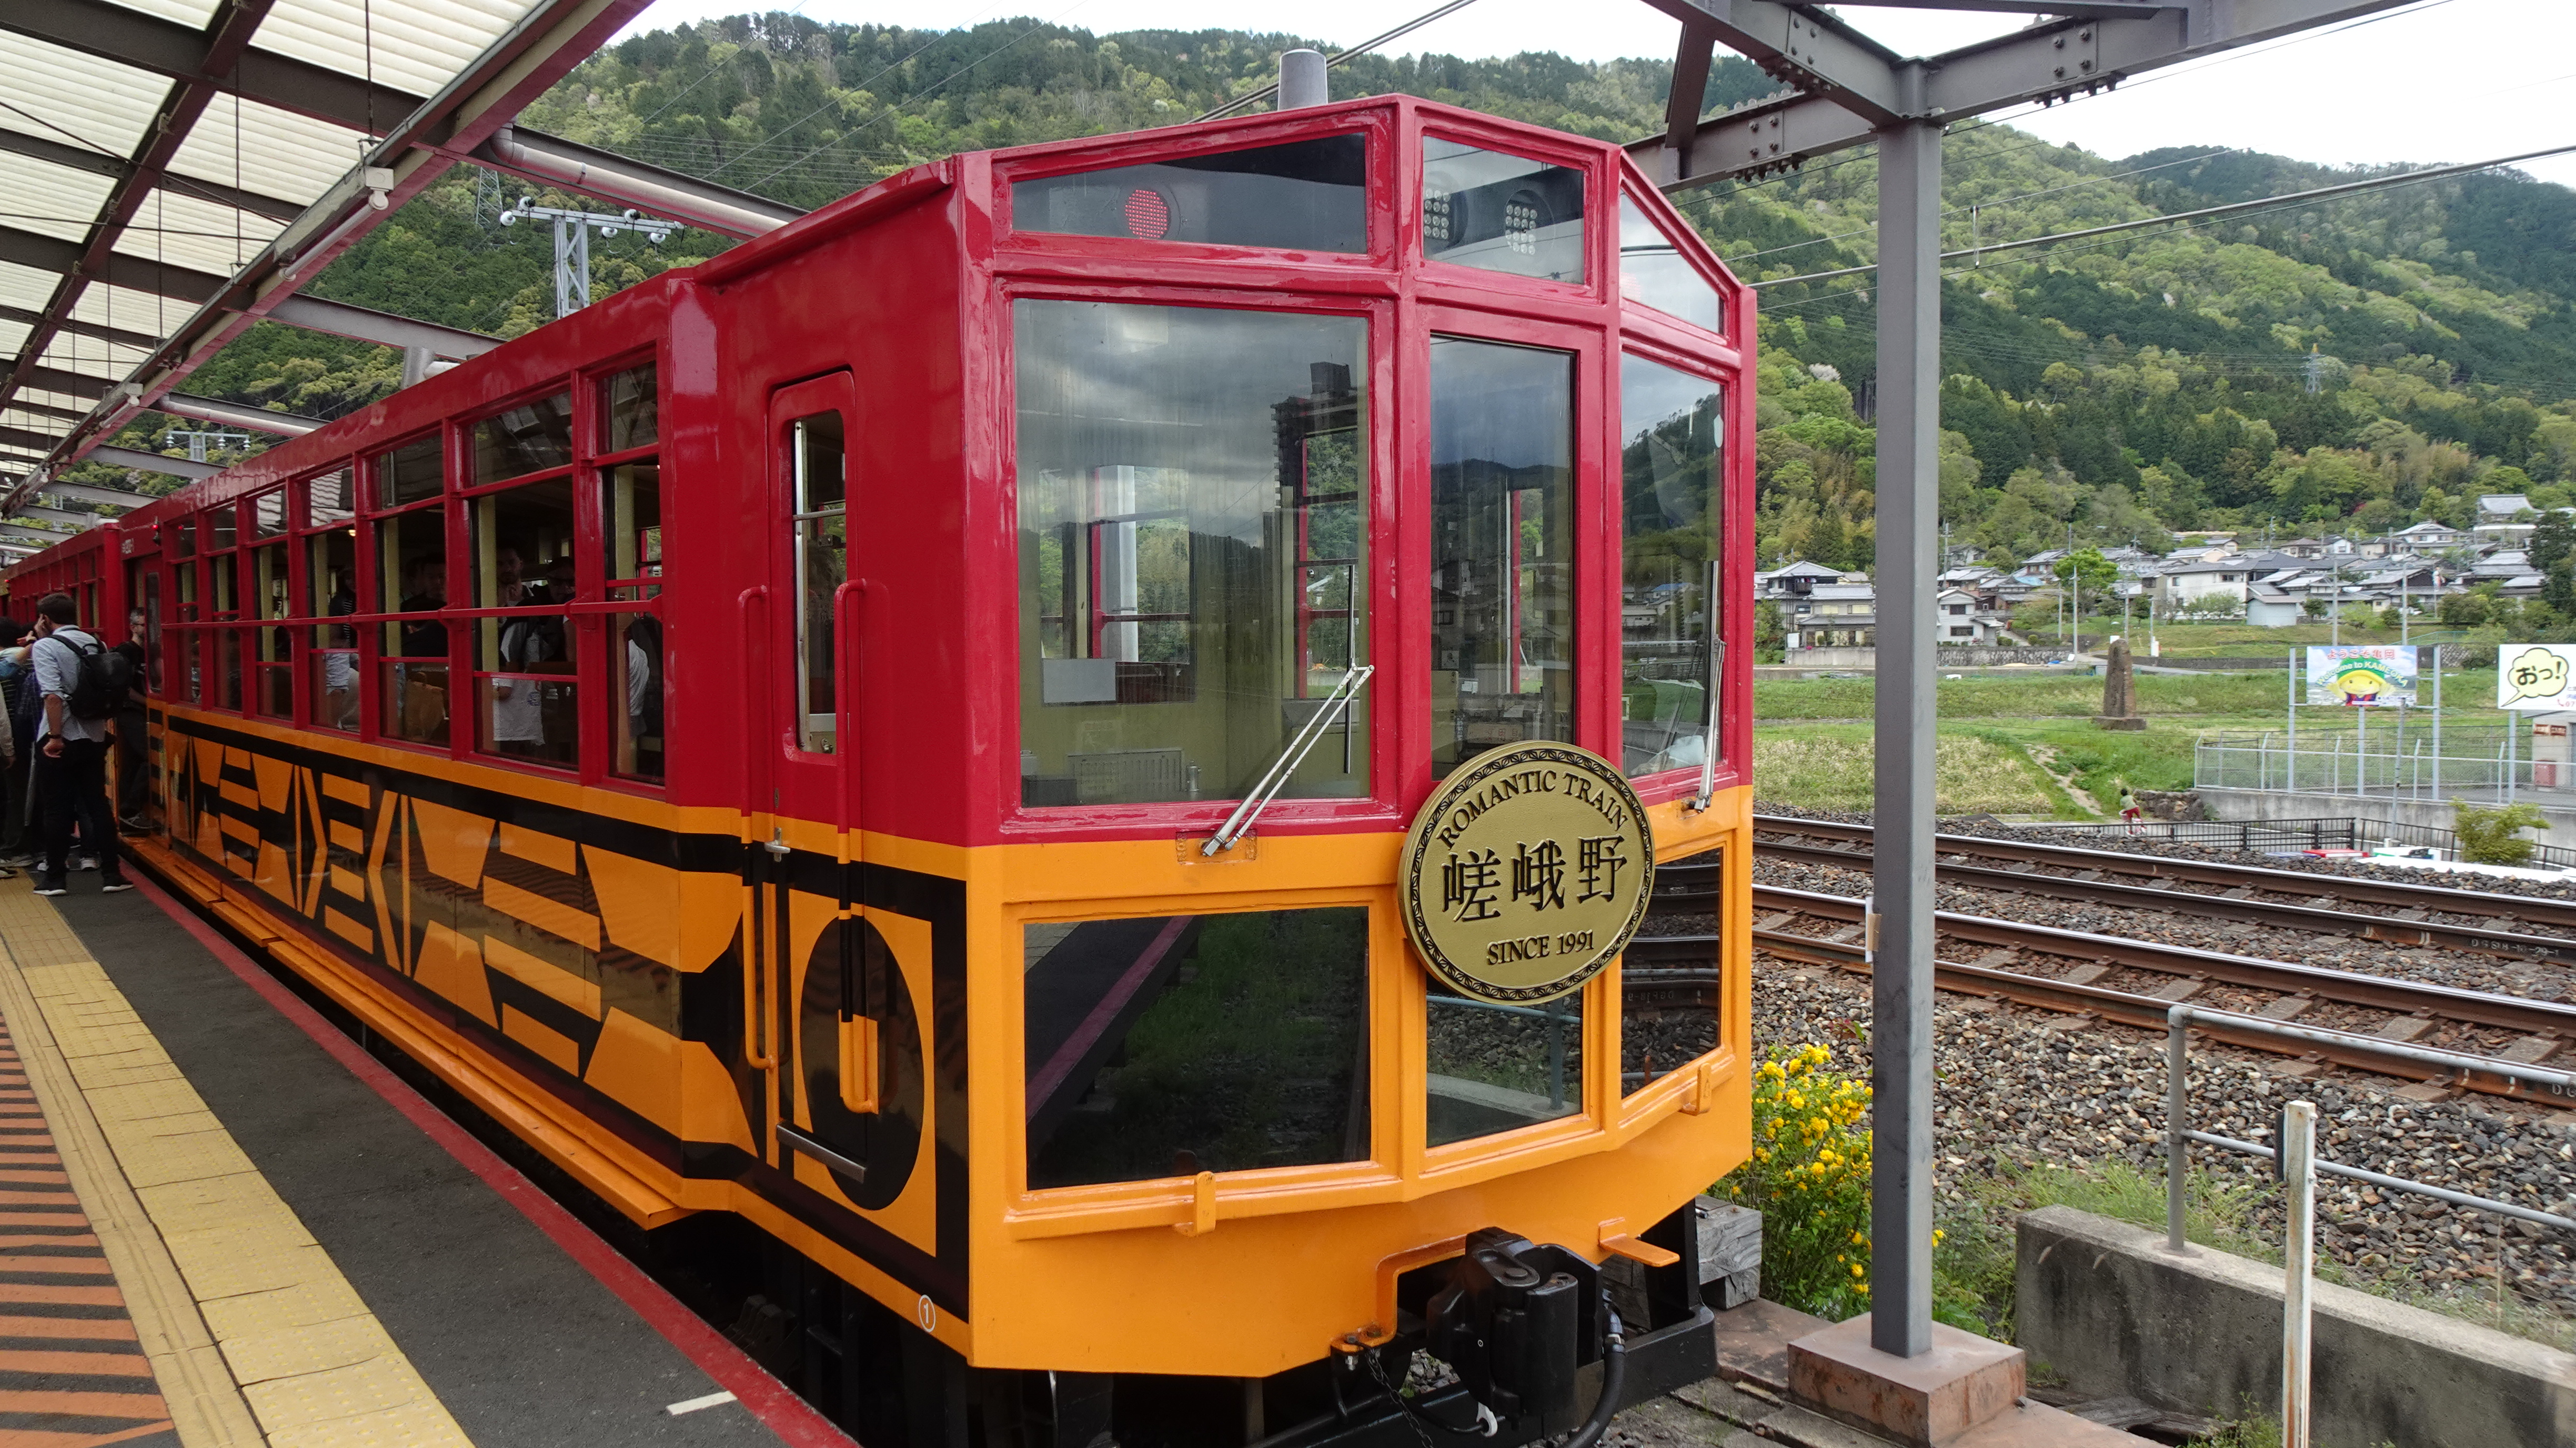 嵯峨野トロッコ列車を楽しむための3つのポイント 嵯峨野観光鉄道 出発進行